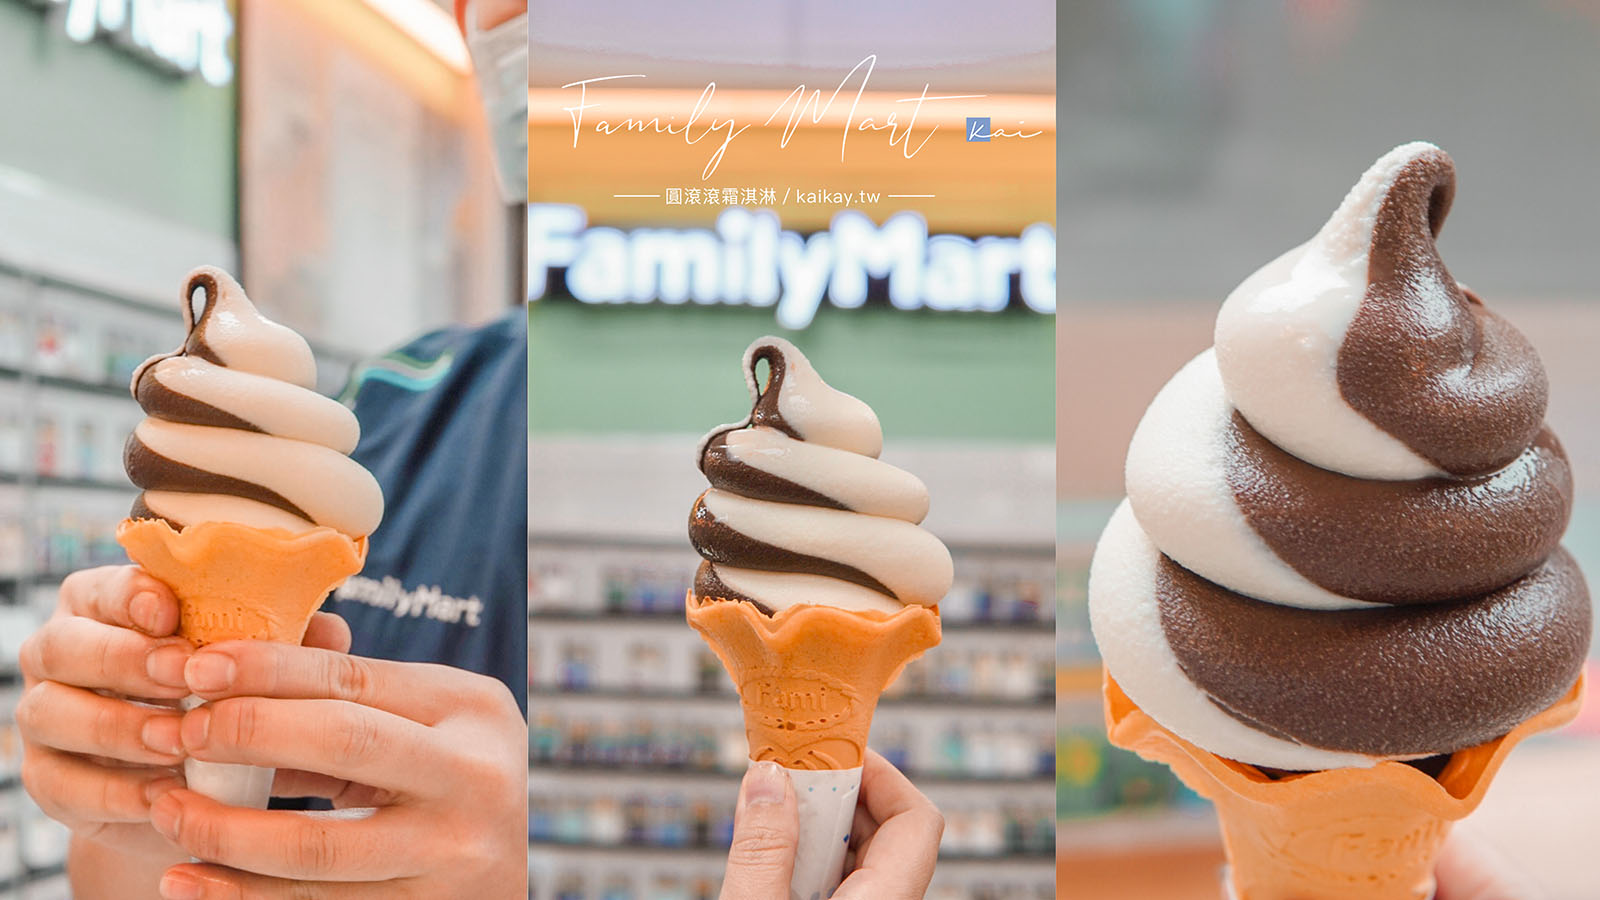 延伸閱讀：☆【超商美食】全家巧克力霜淇淋「圓滾滾」造型超可愛。全台新增58間門市販售一覽表